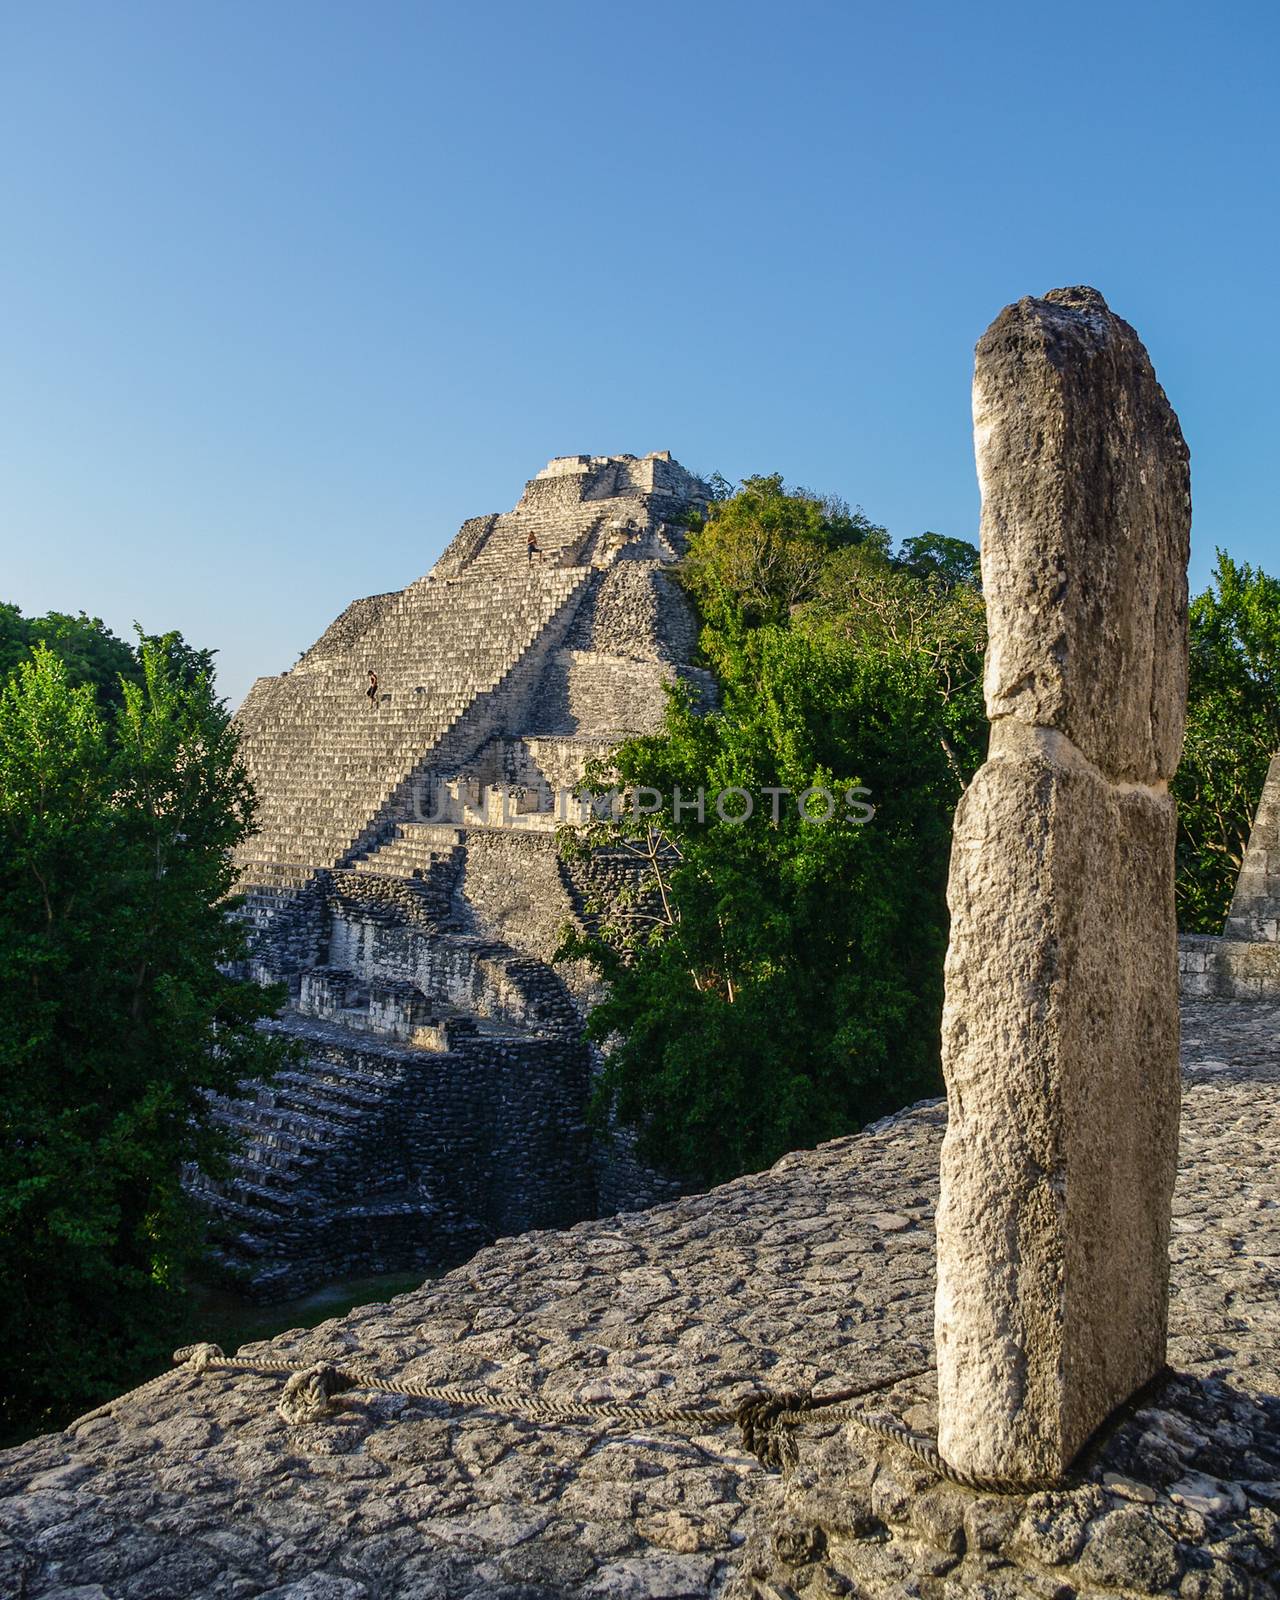 Pyramid. Ruins of the ancient Mayan city of Becan, Mexico